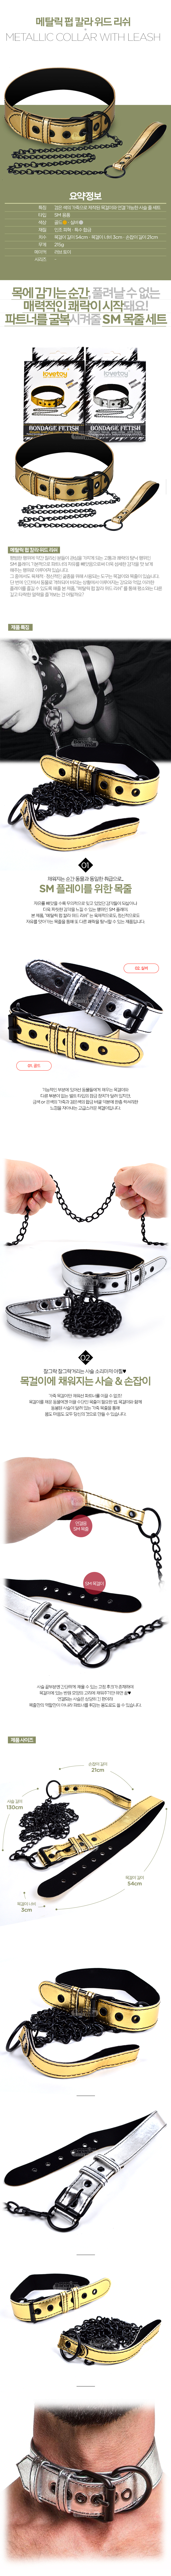 [SM 플레이] 메탈릭 펍 칼라 위드 리쉬(Metalic Pup Collar With Leash) - 러브토이(LV761004) (LVT)